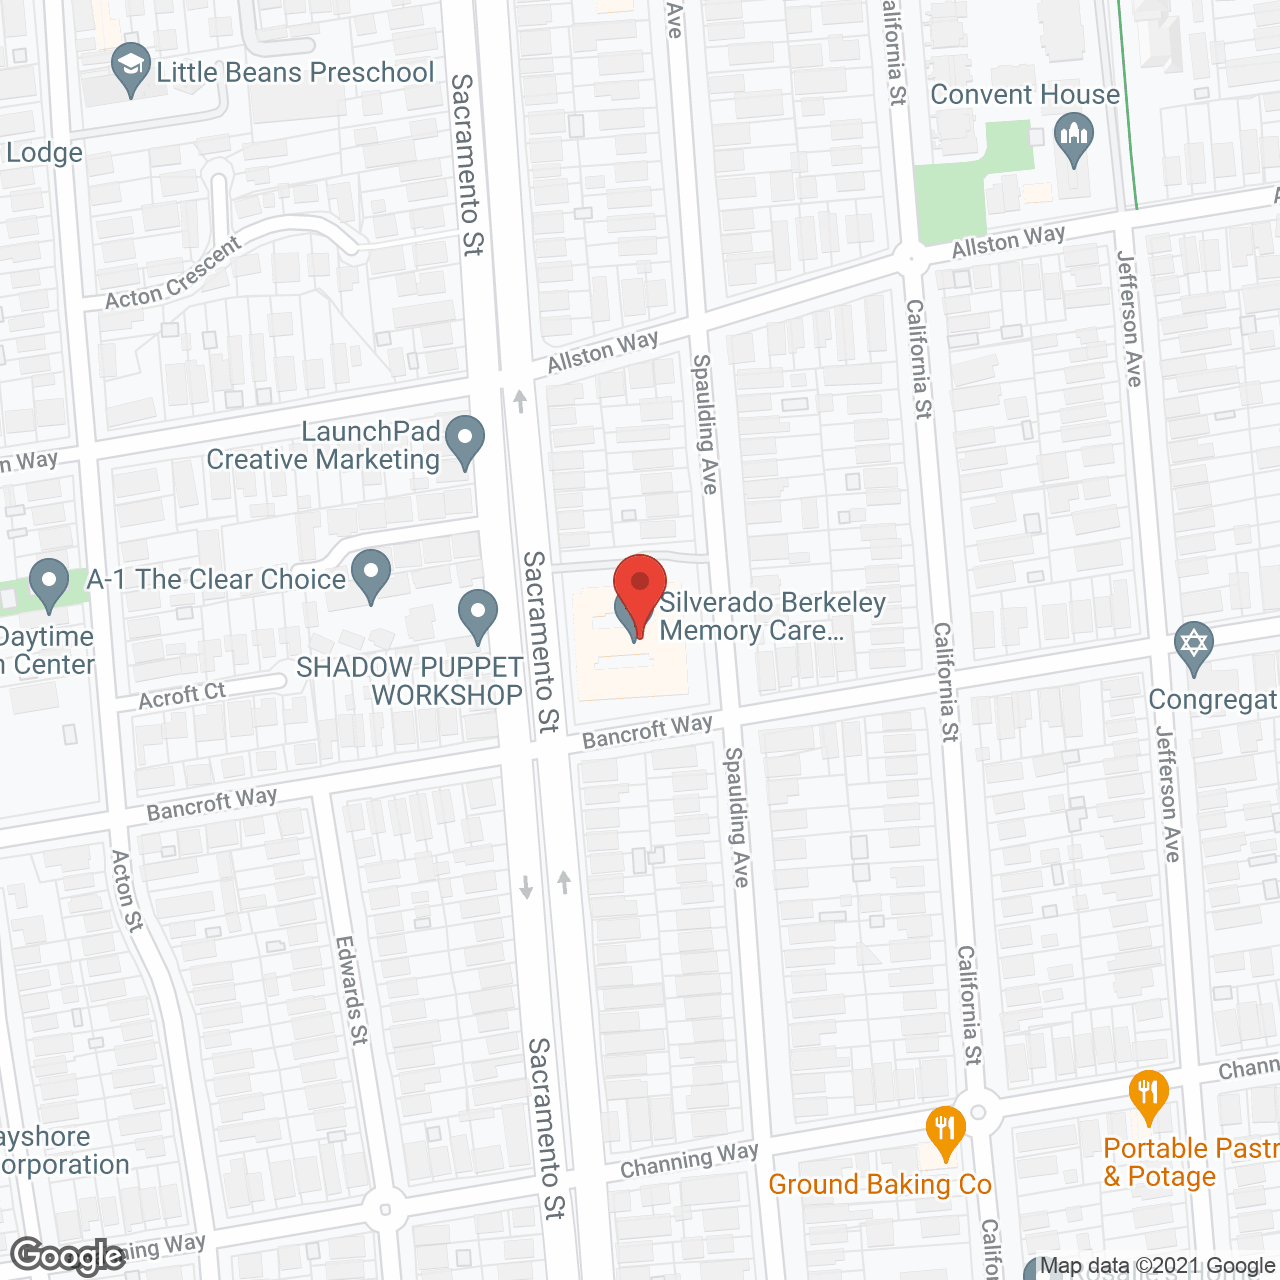 Silverado Berkeley in google map